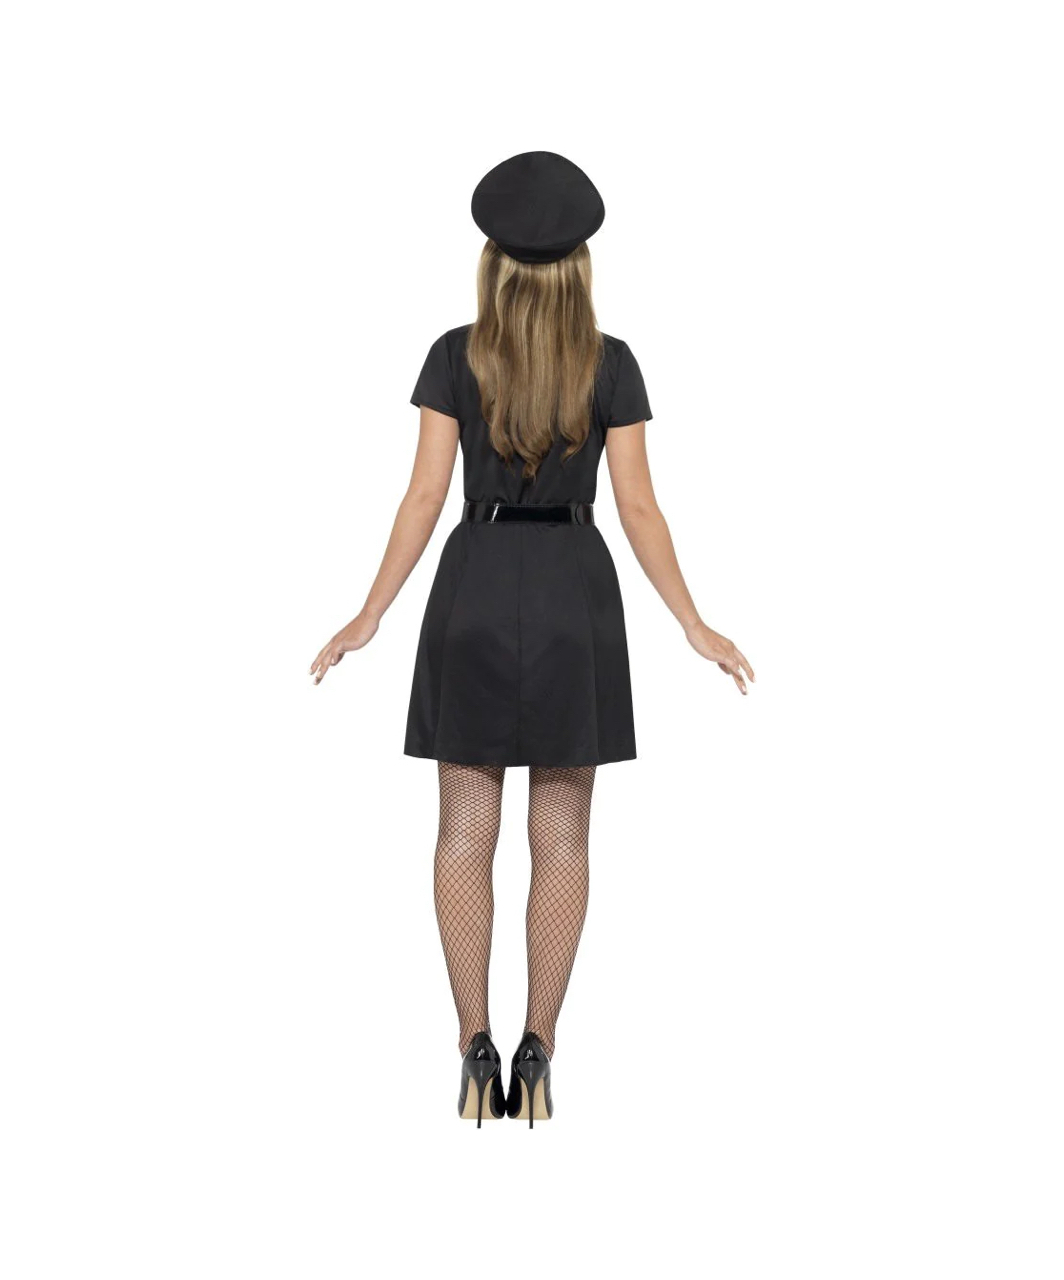 Fever Special Constable черный костюм женщины-полицейского